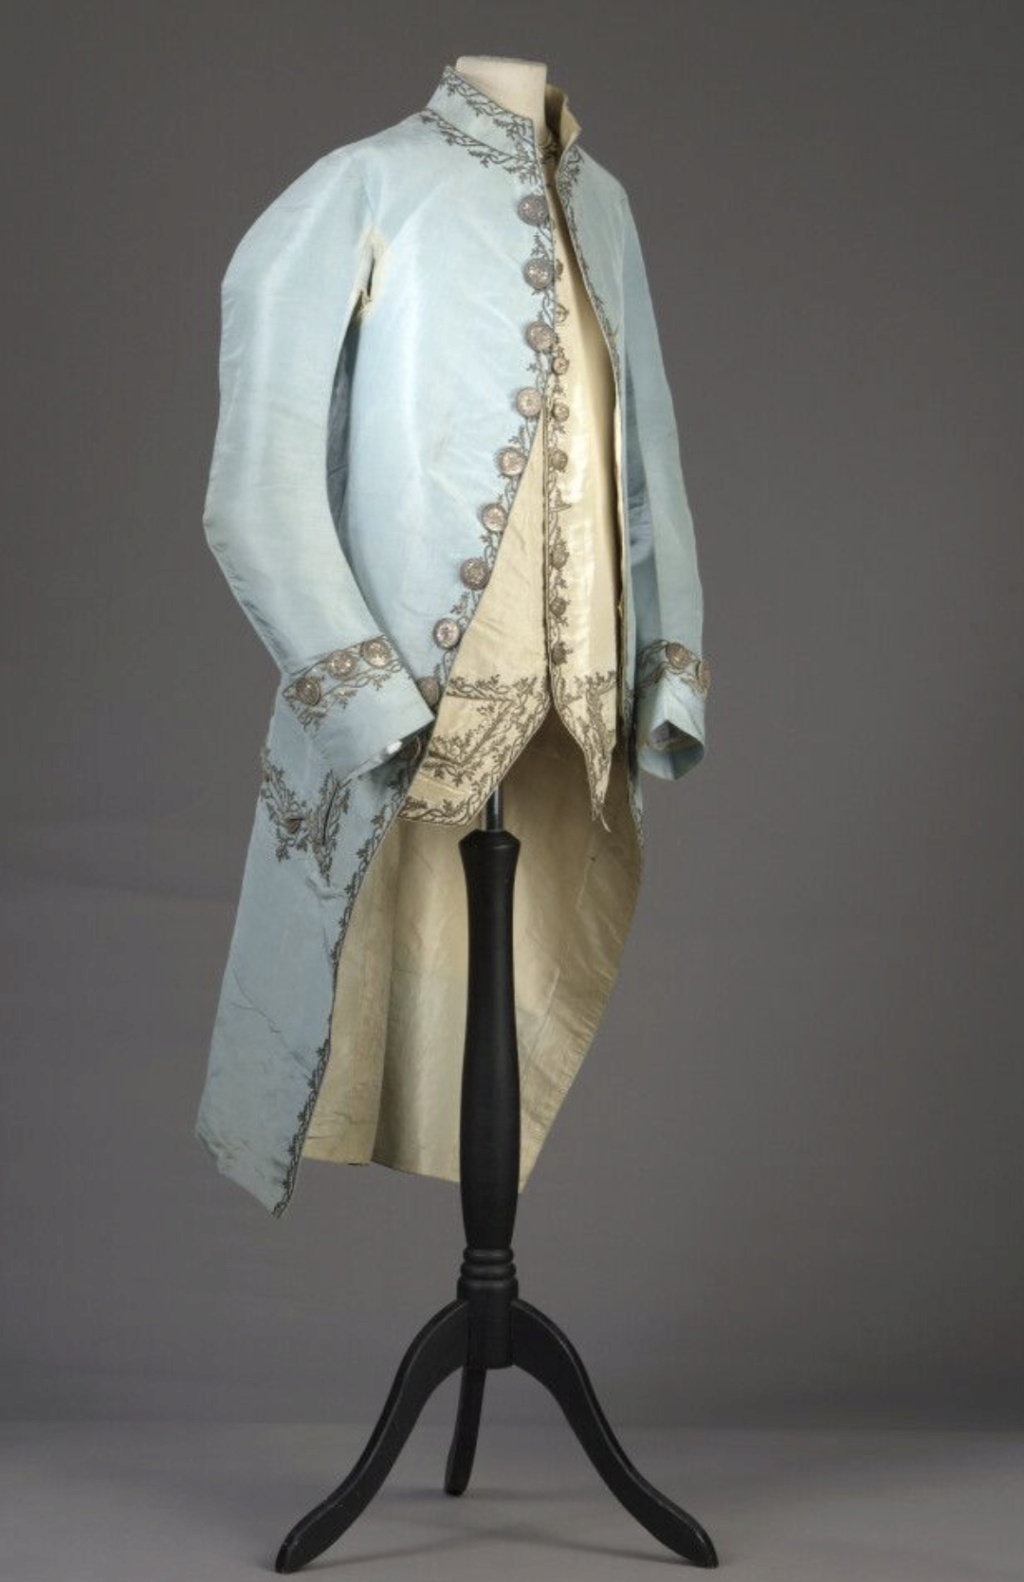 La mode et les habits masculins au XVIIIe siècle - Page 4 Capt3268